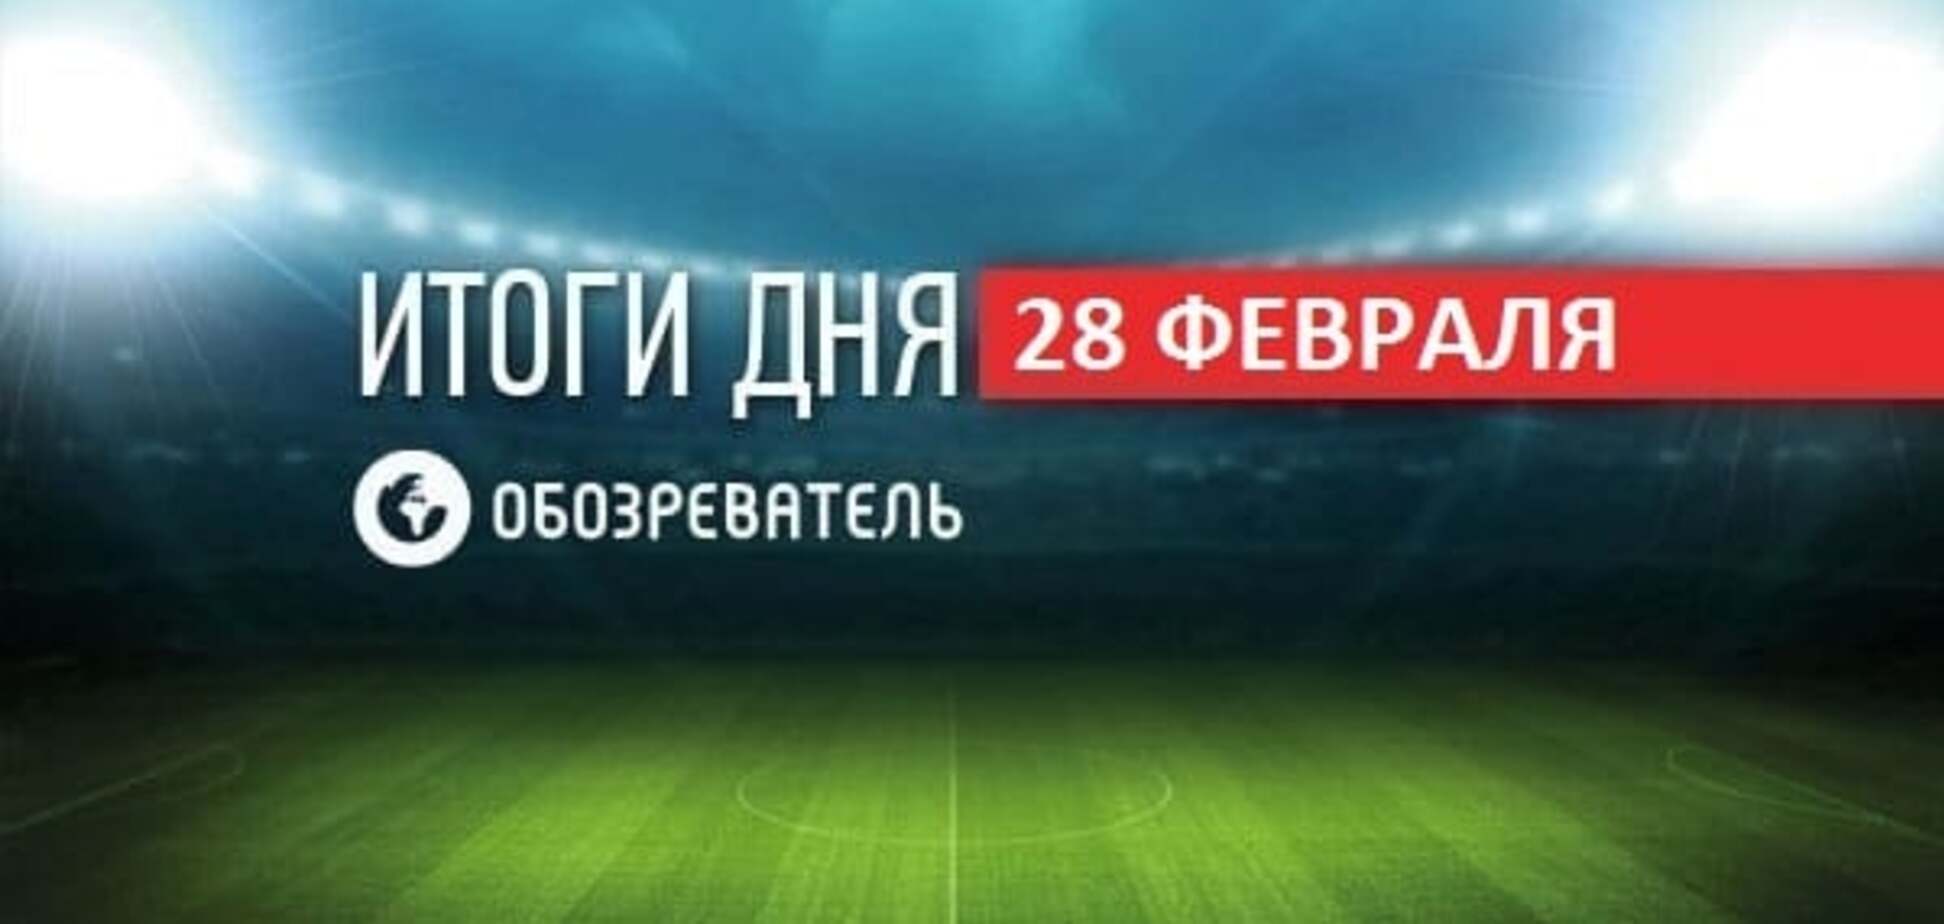 Дебютный гол Милевского в Румынии. Спортивные итоги 28 февраля